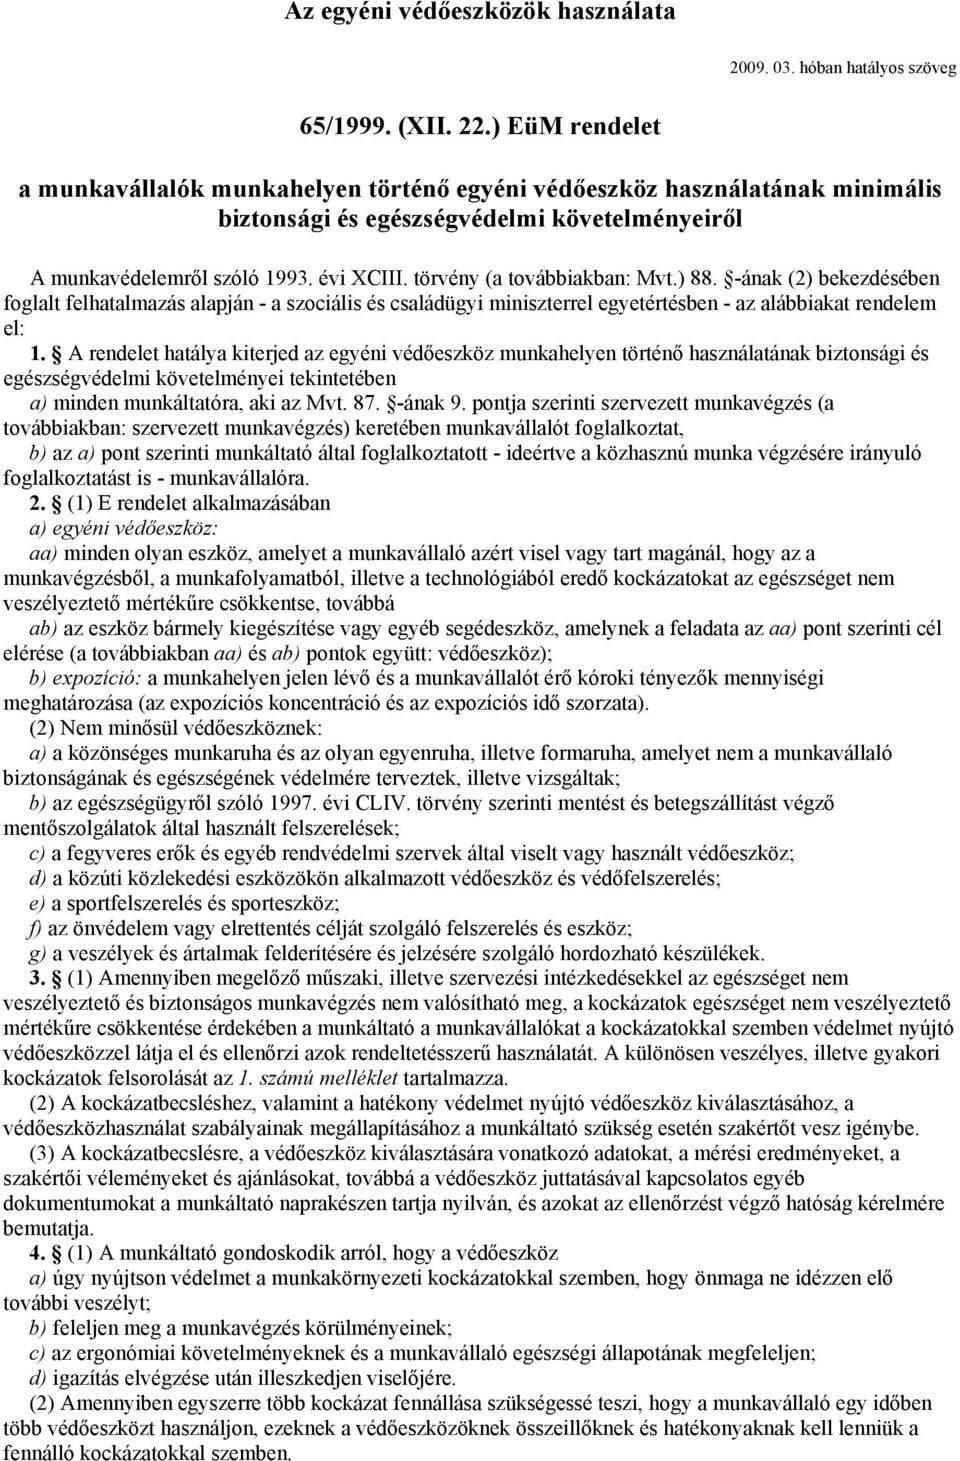 Az egyéni védőeszközök használata. 65/1999. (XII. 22.) EüM rendelet - PDF  Free Download